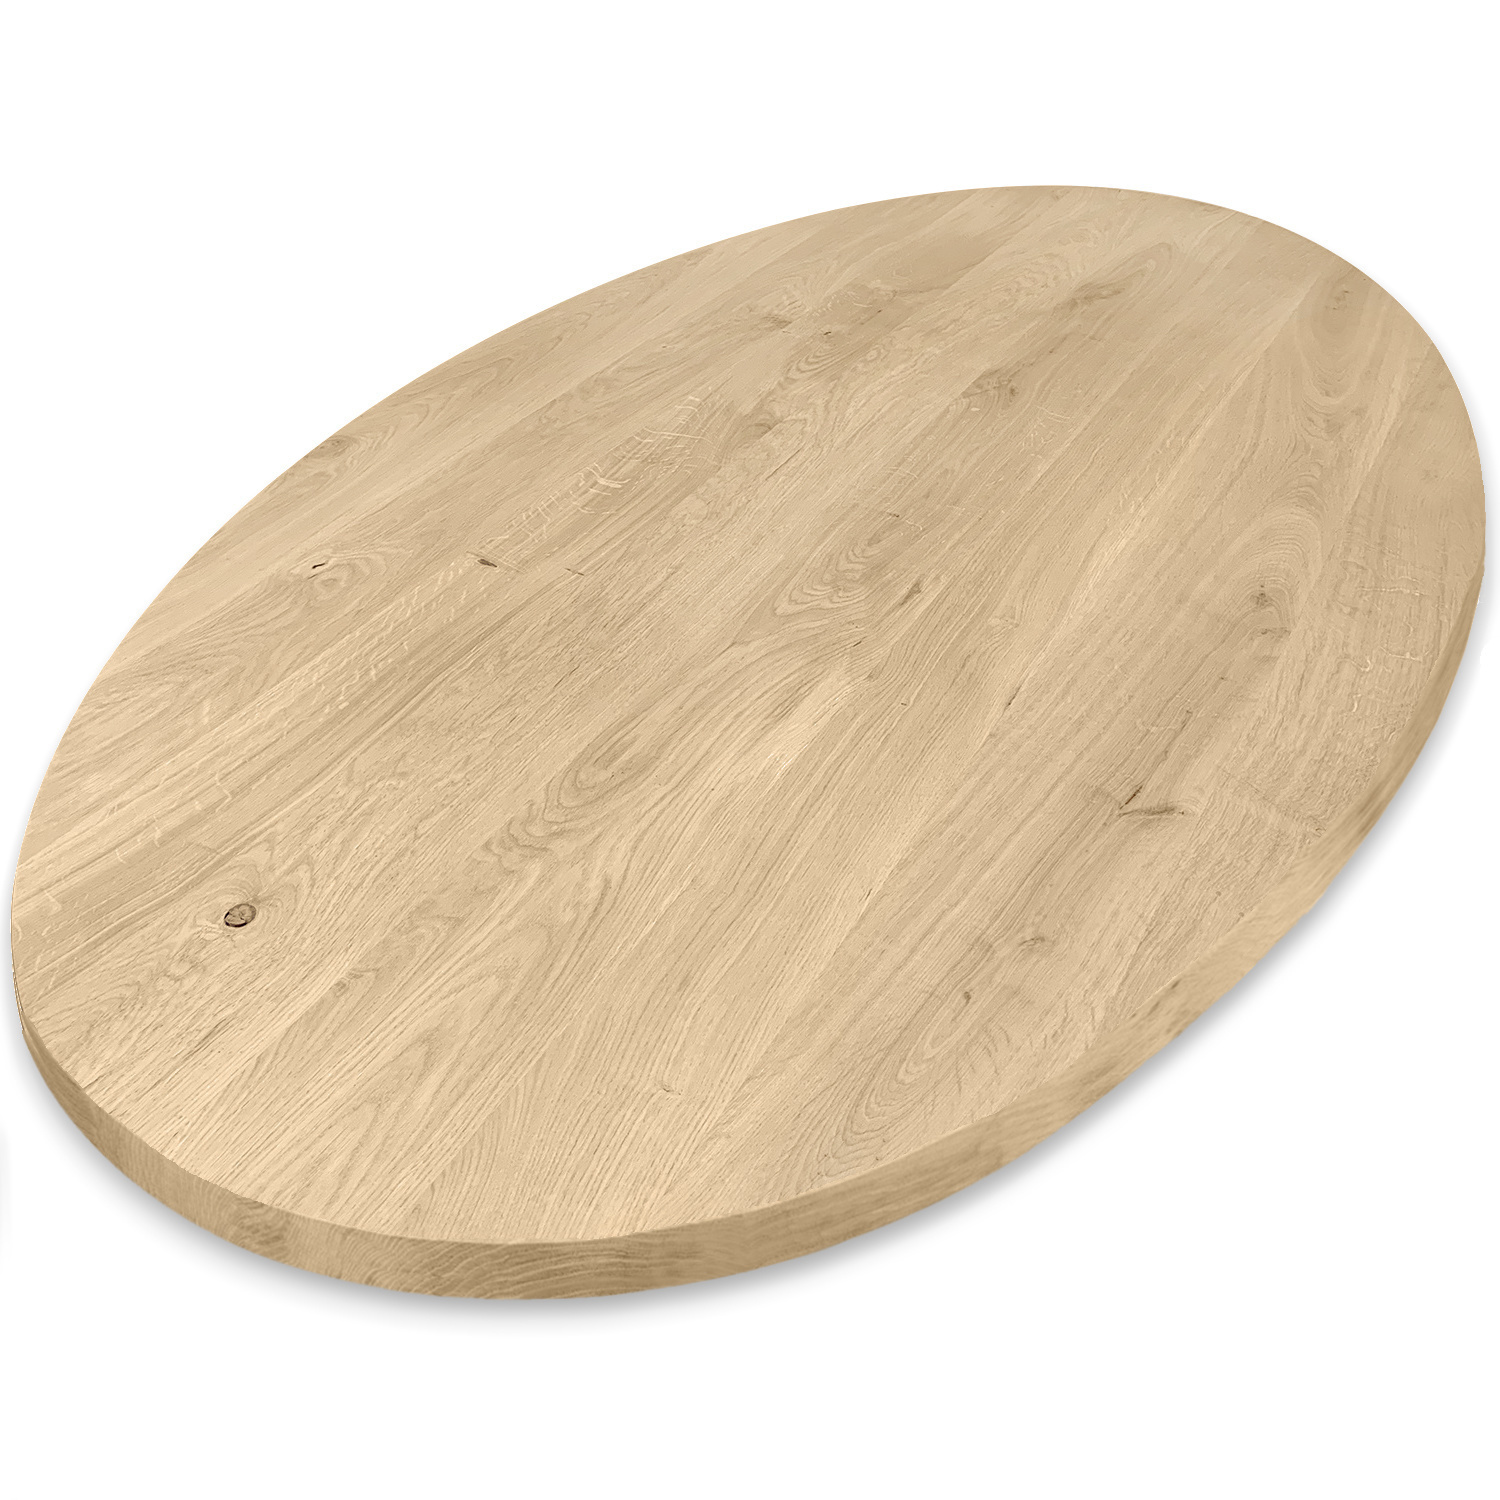  Tischplatte Eiche oval - 4 cm dick (1-Schicht) - Breite Lamellen (10 - 12 cm breit) - Eichenholz rustikal - Tischplatte ovale / ellipse Eiche - verleimt & künstlich getrocknet (HF 8-12%) - verschiedene Größen